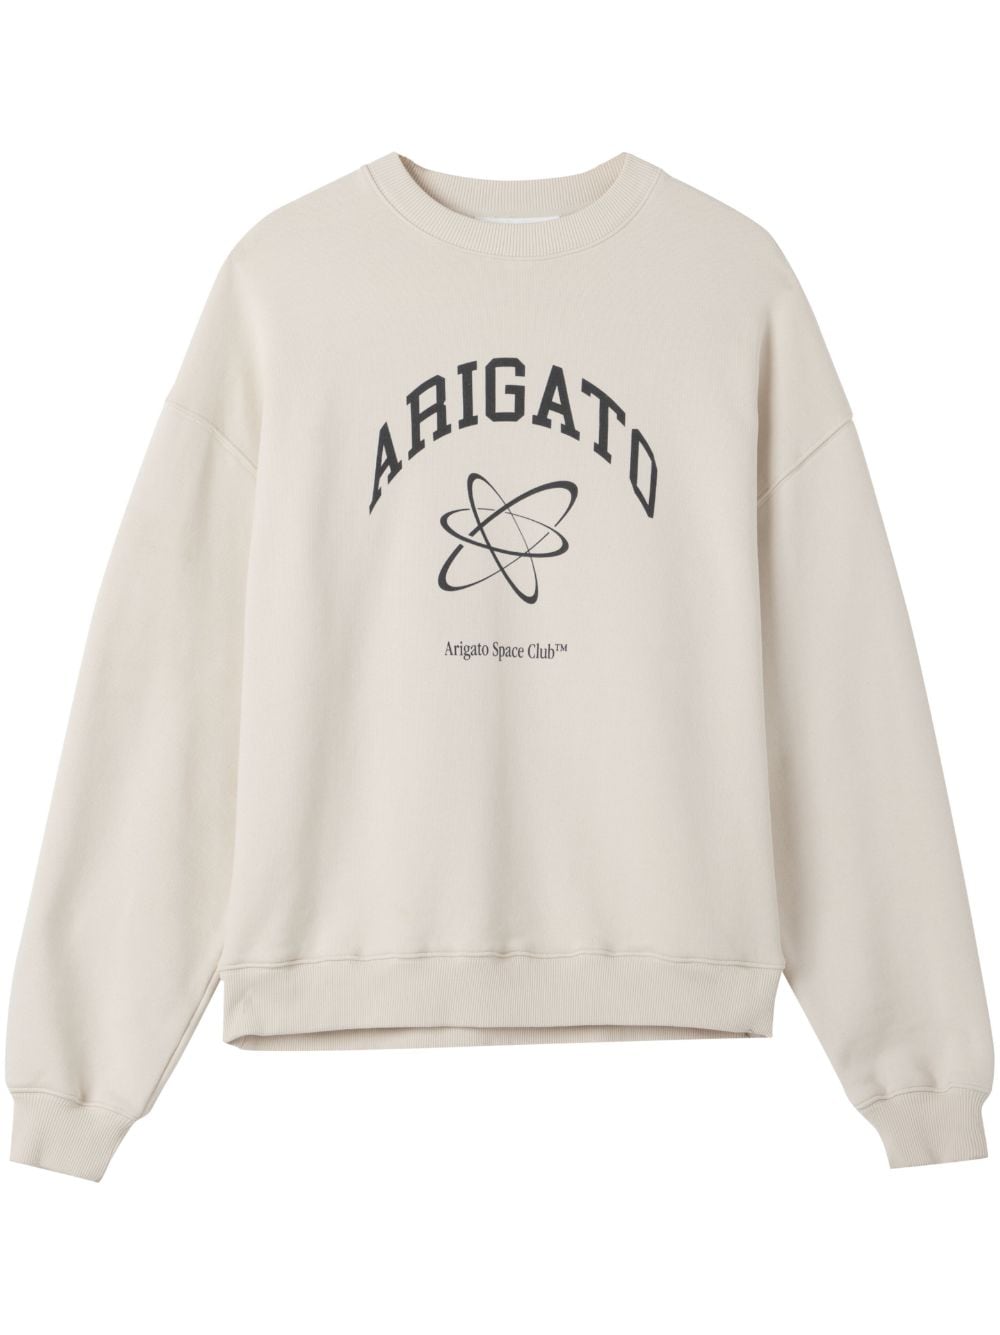 Arigato Space Club logo print sweatshirt